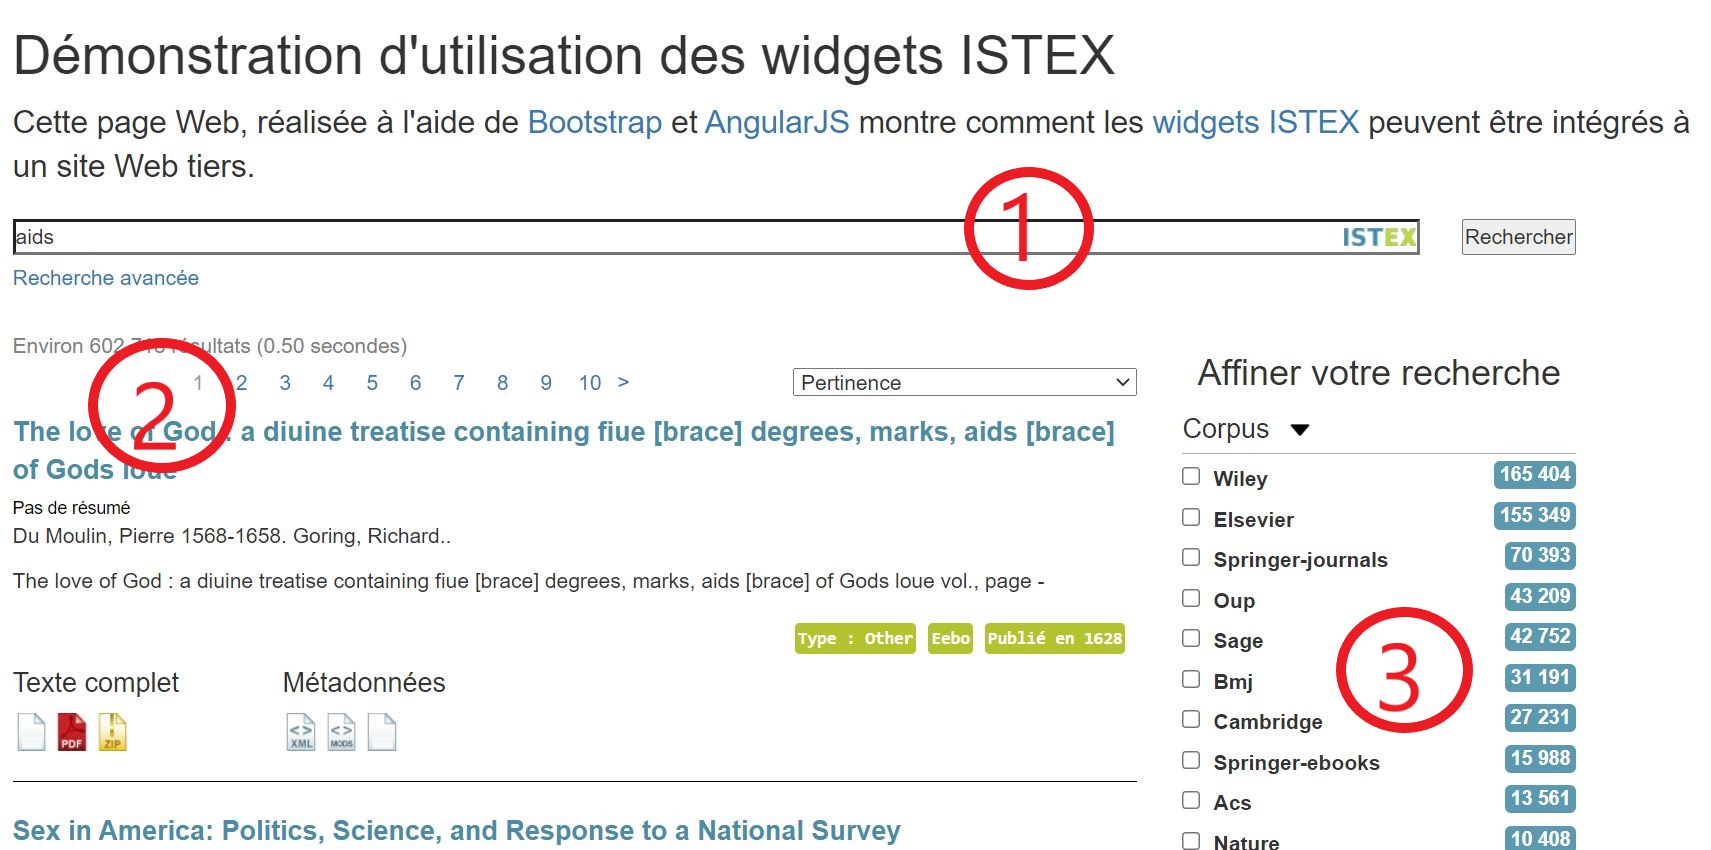 Démonstration d'uilisation des widgets Istex